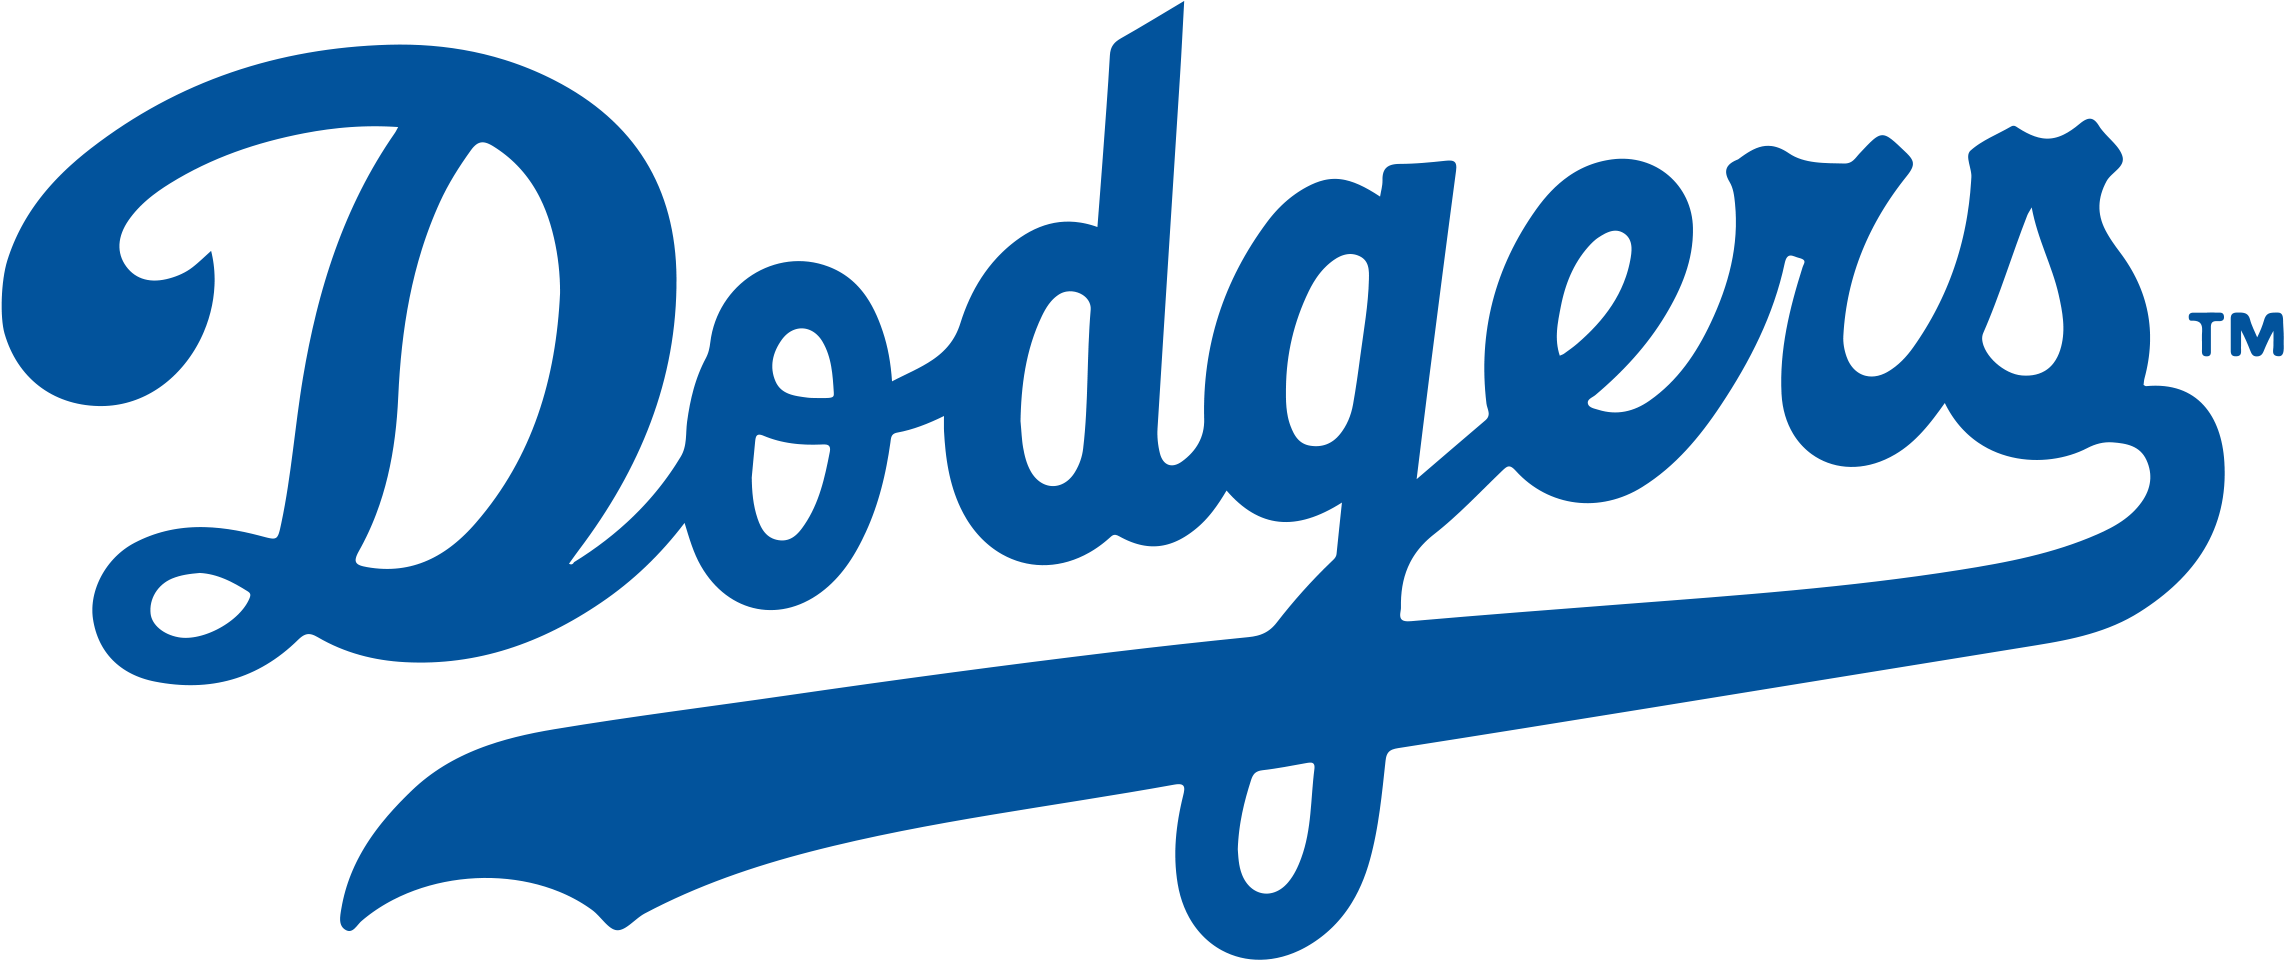 Brooklyn Los Angeles Dodgers Chicago Cubs Mlb Logo - Brooklyn Dodgers Logo (2285x979)